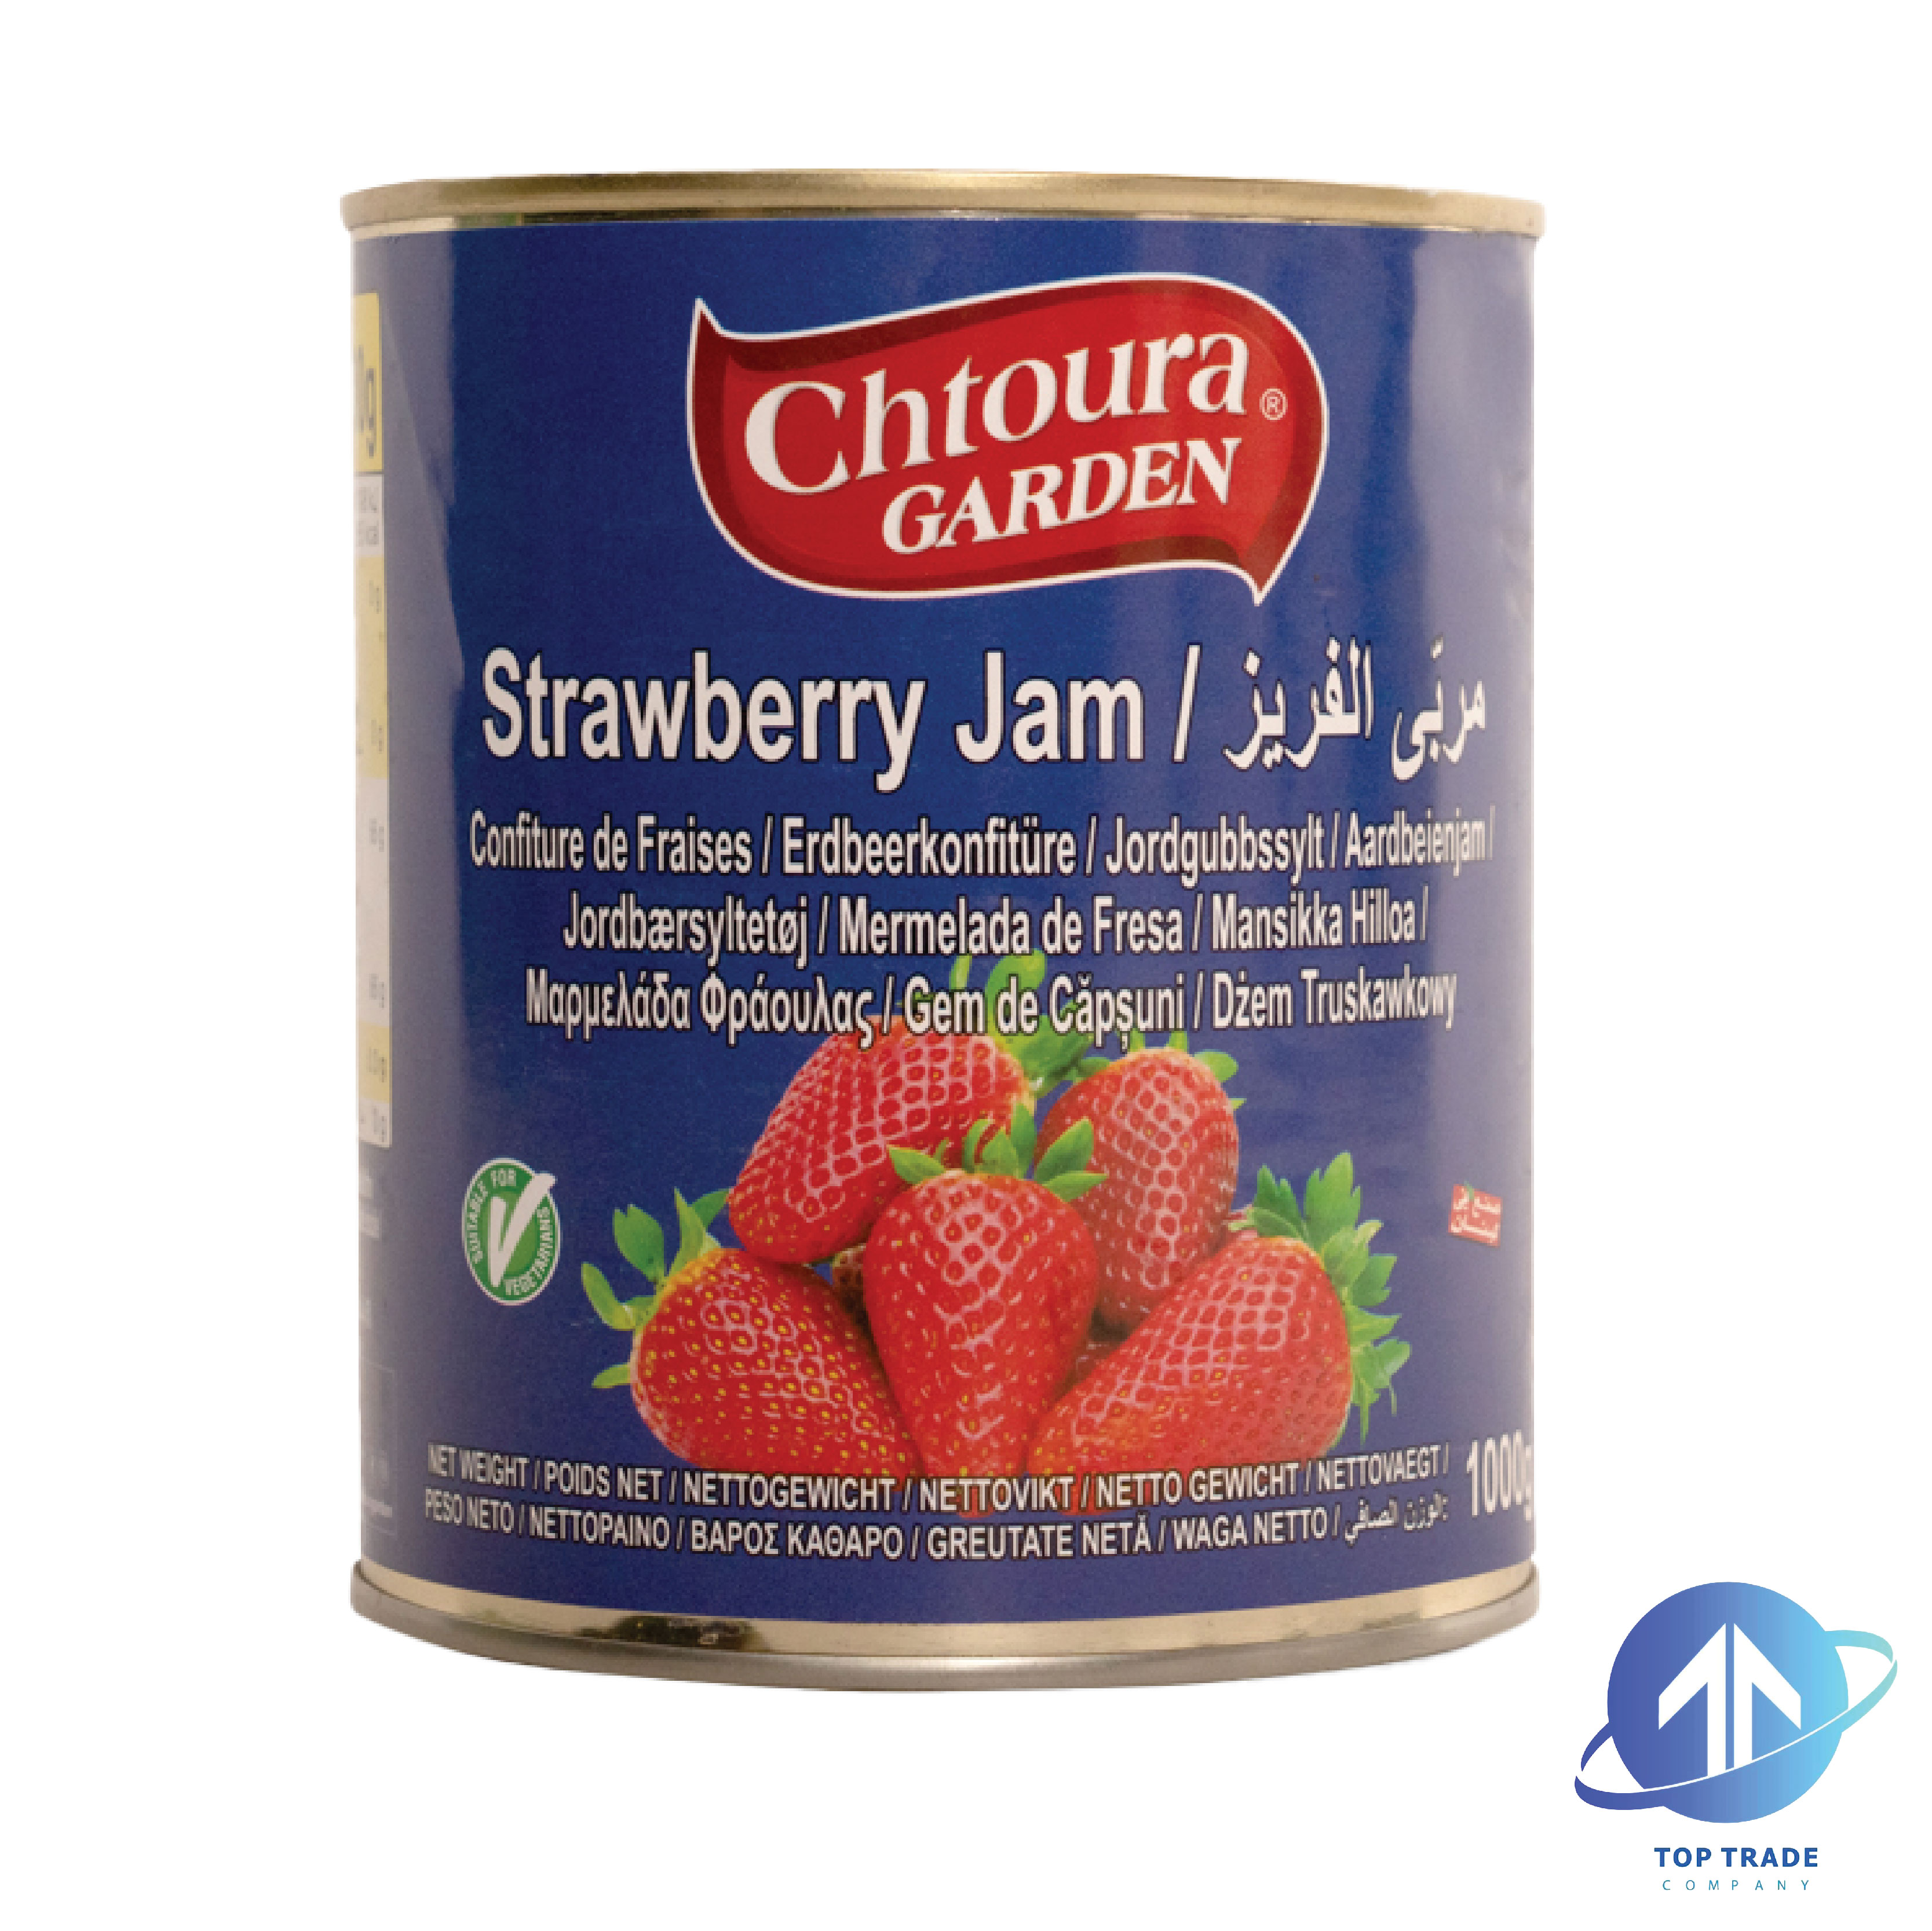 Chtoura garden Strawberry Jam 1KG